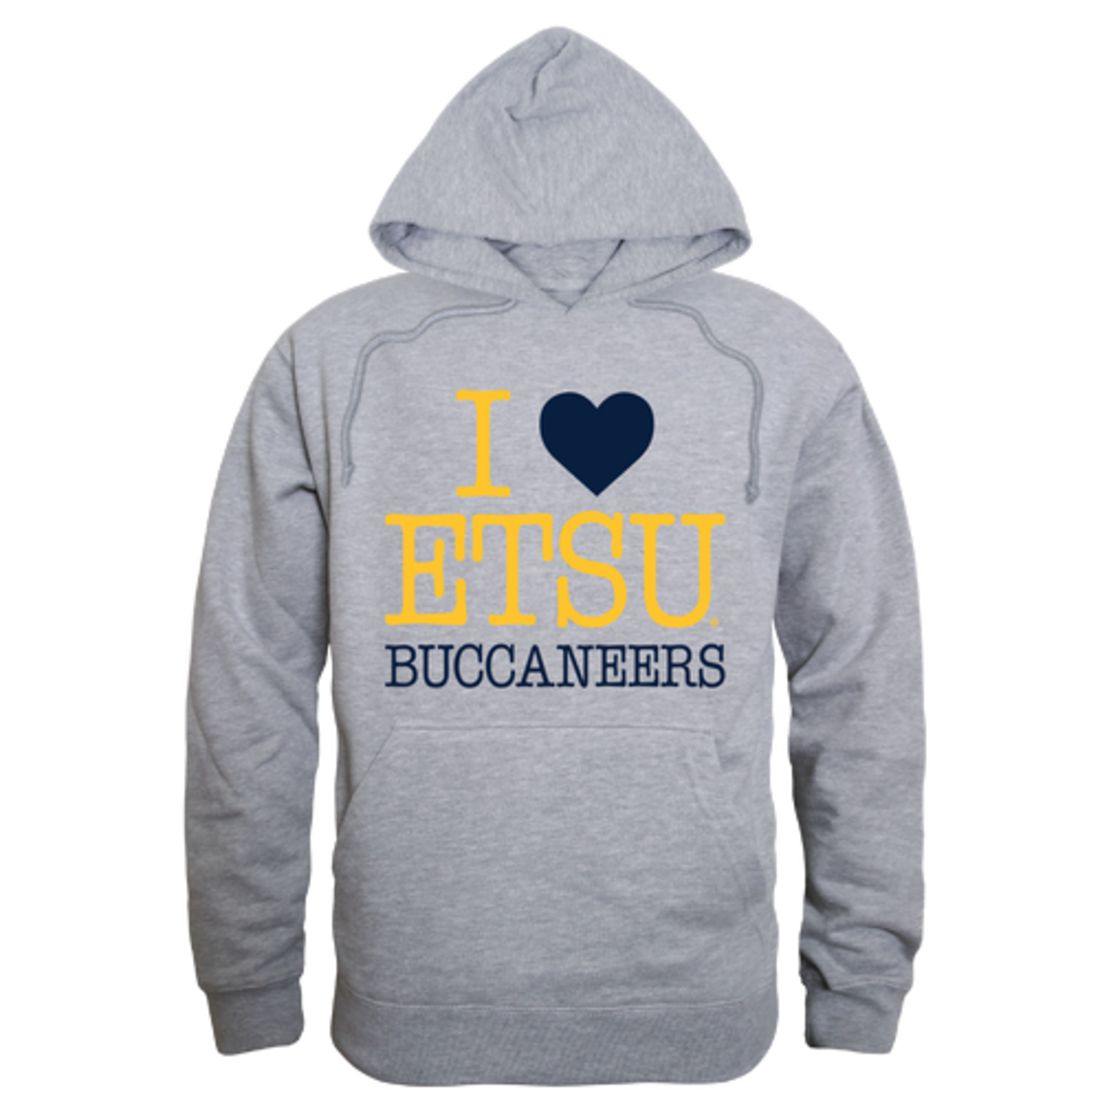 I Love ETSU East Tennessee State University Buccaneers Hoodie Sweatshirt-Campus-Wardrobe